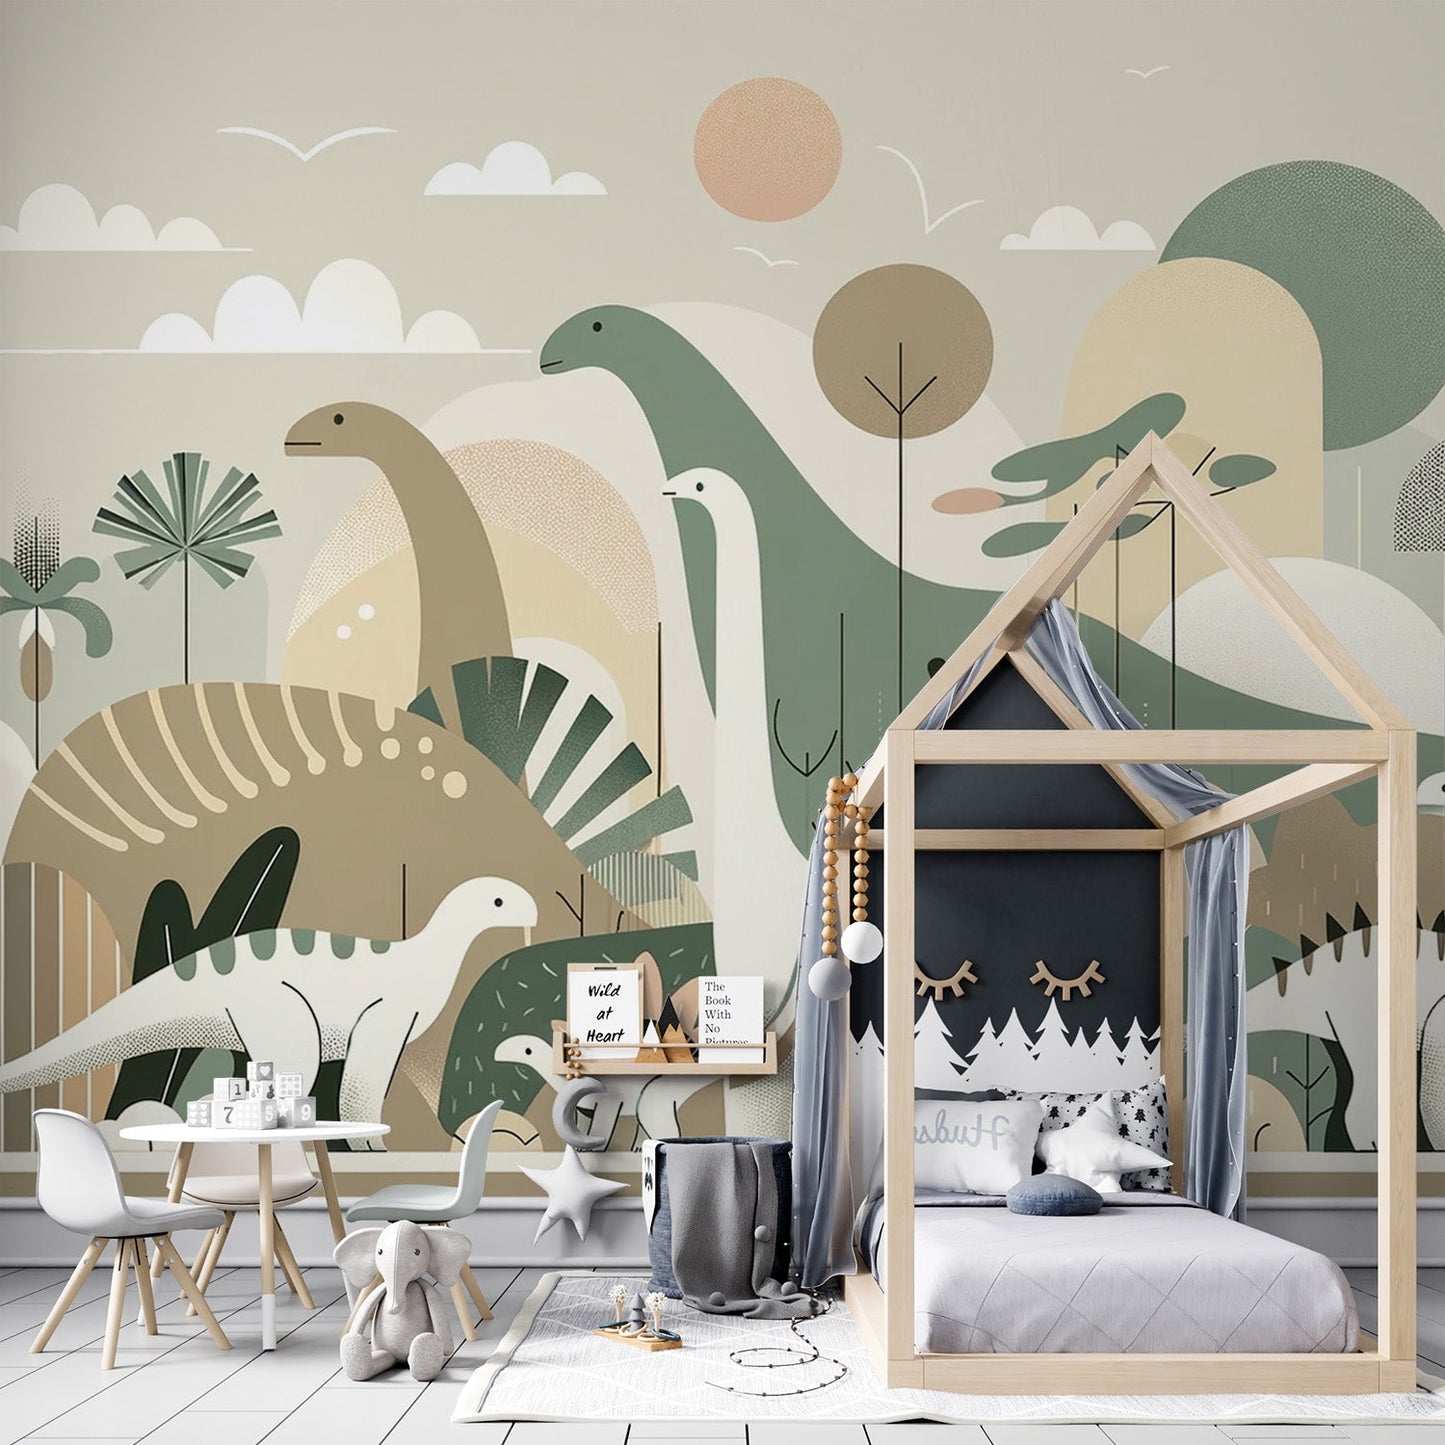 Baby Dinosaur Wallpaper | Imaginary Illustration of Dinosaurs in Neutral Tones